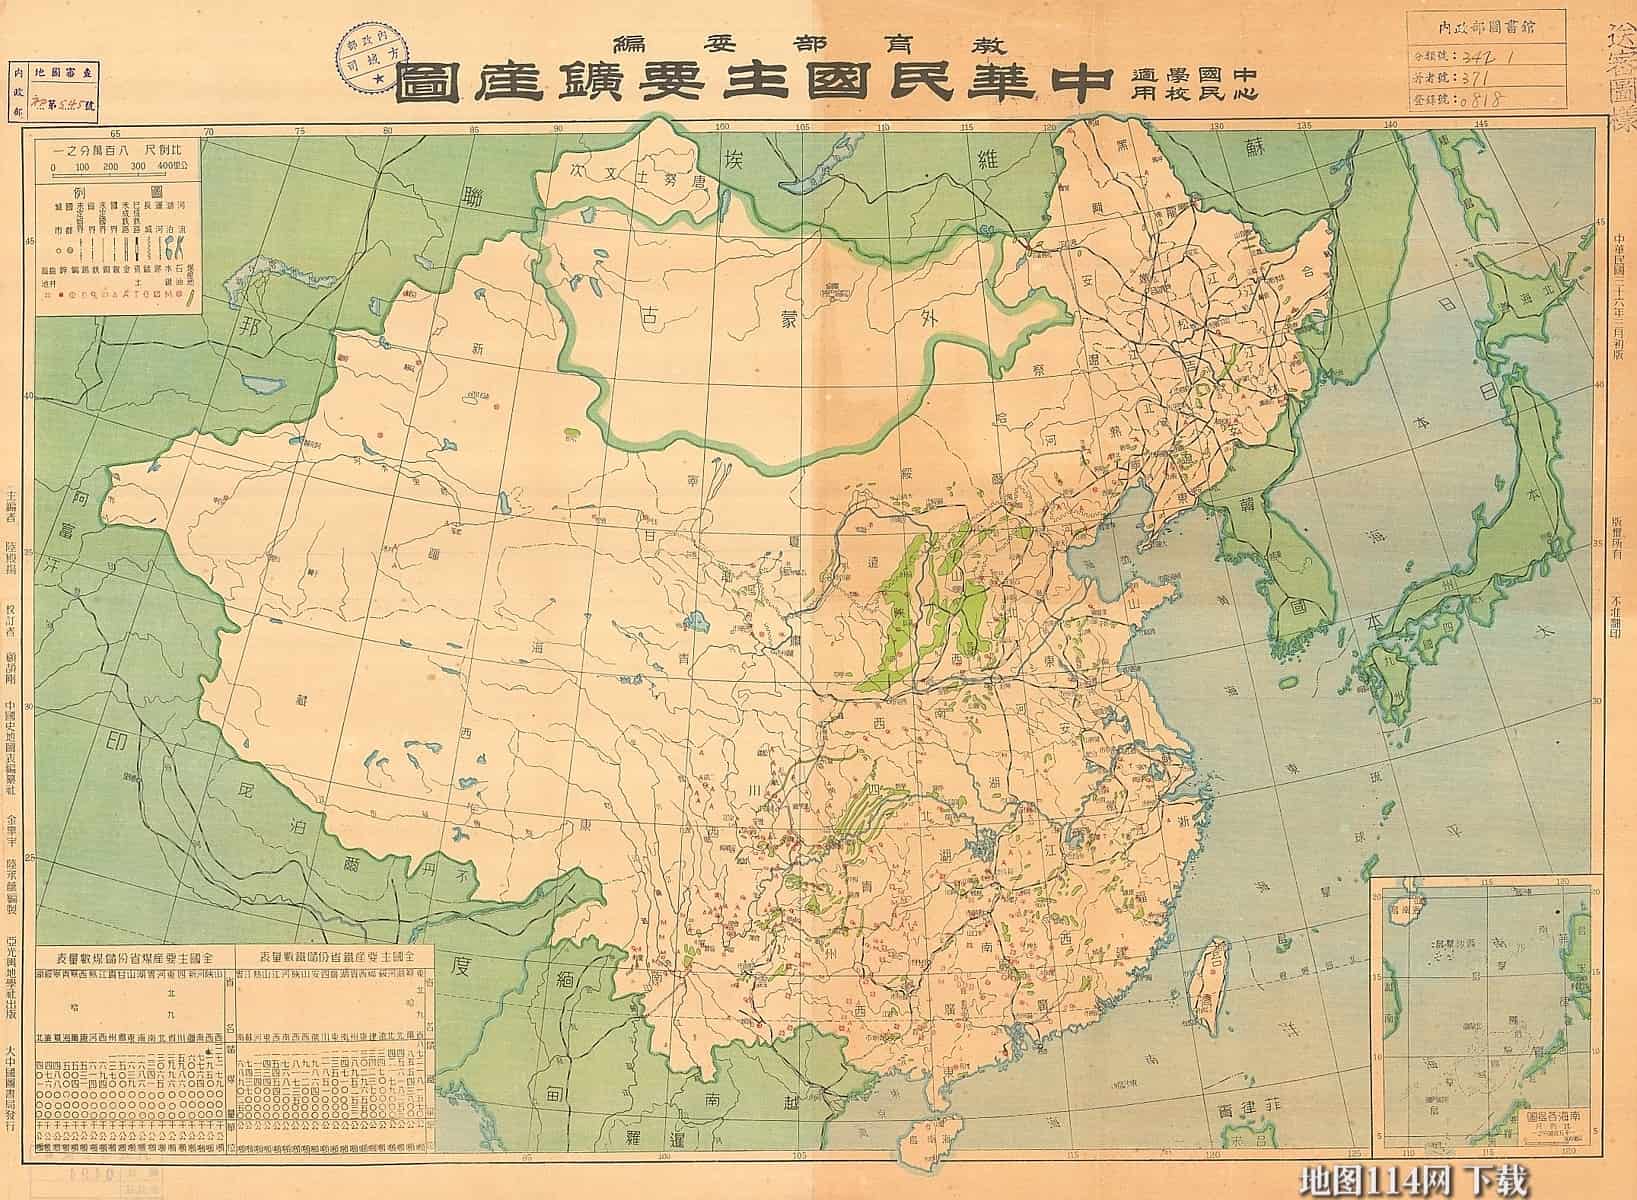 1947年中华民国主要矿场图.jpg